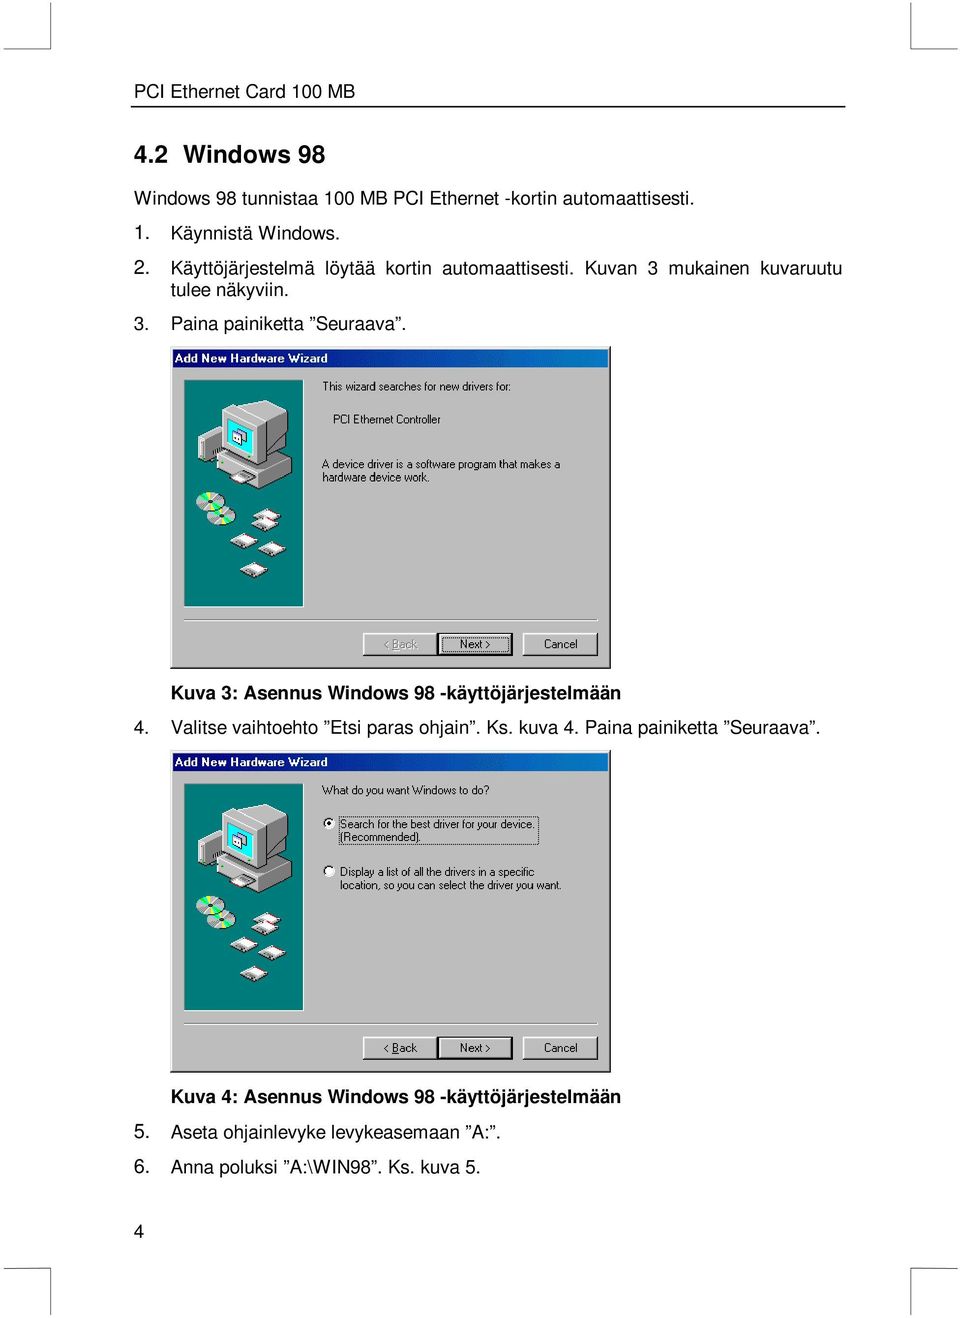 Kuva 3: Asennus Windows 98 -käyttöjärjestelmään 4. Valitse vaihtoehto Etsi paras ohjain. Ks. kuva 4.